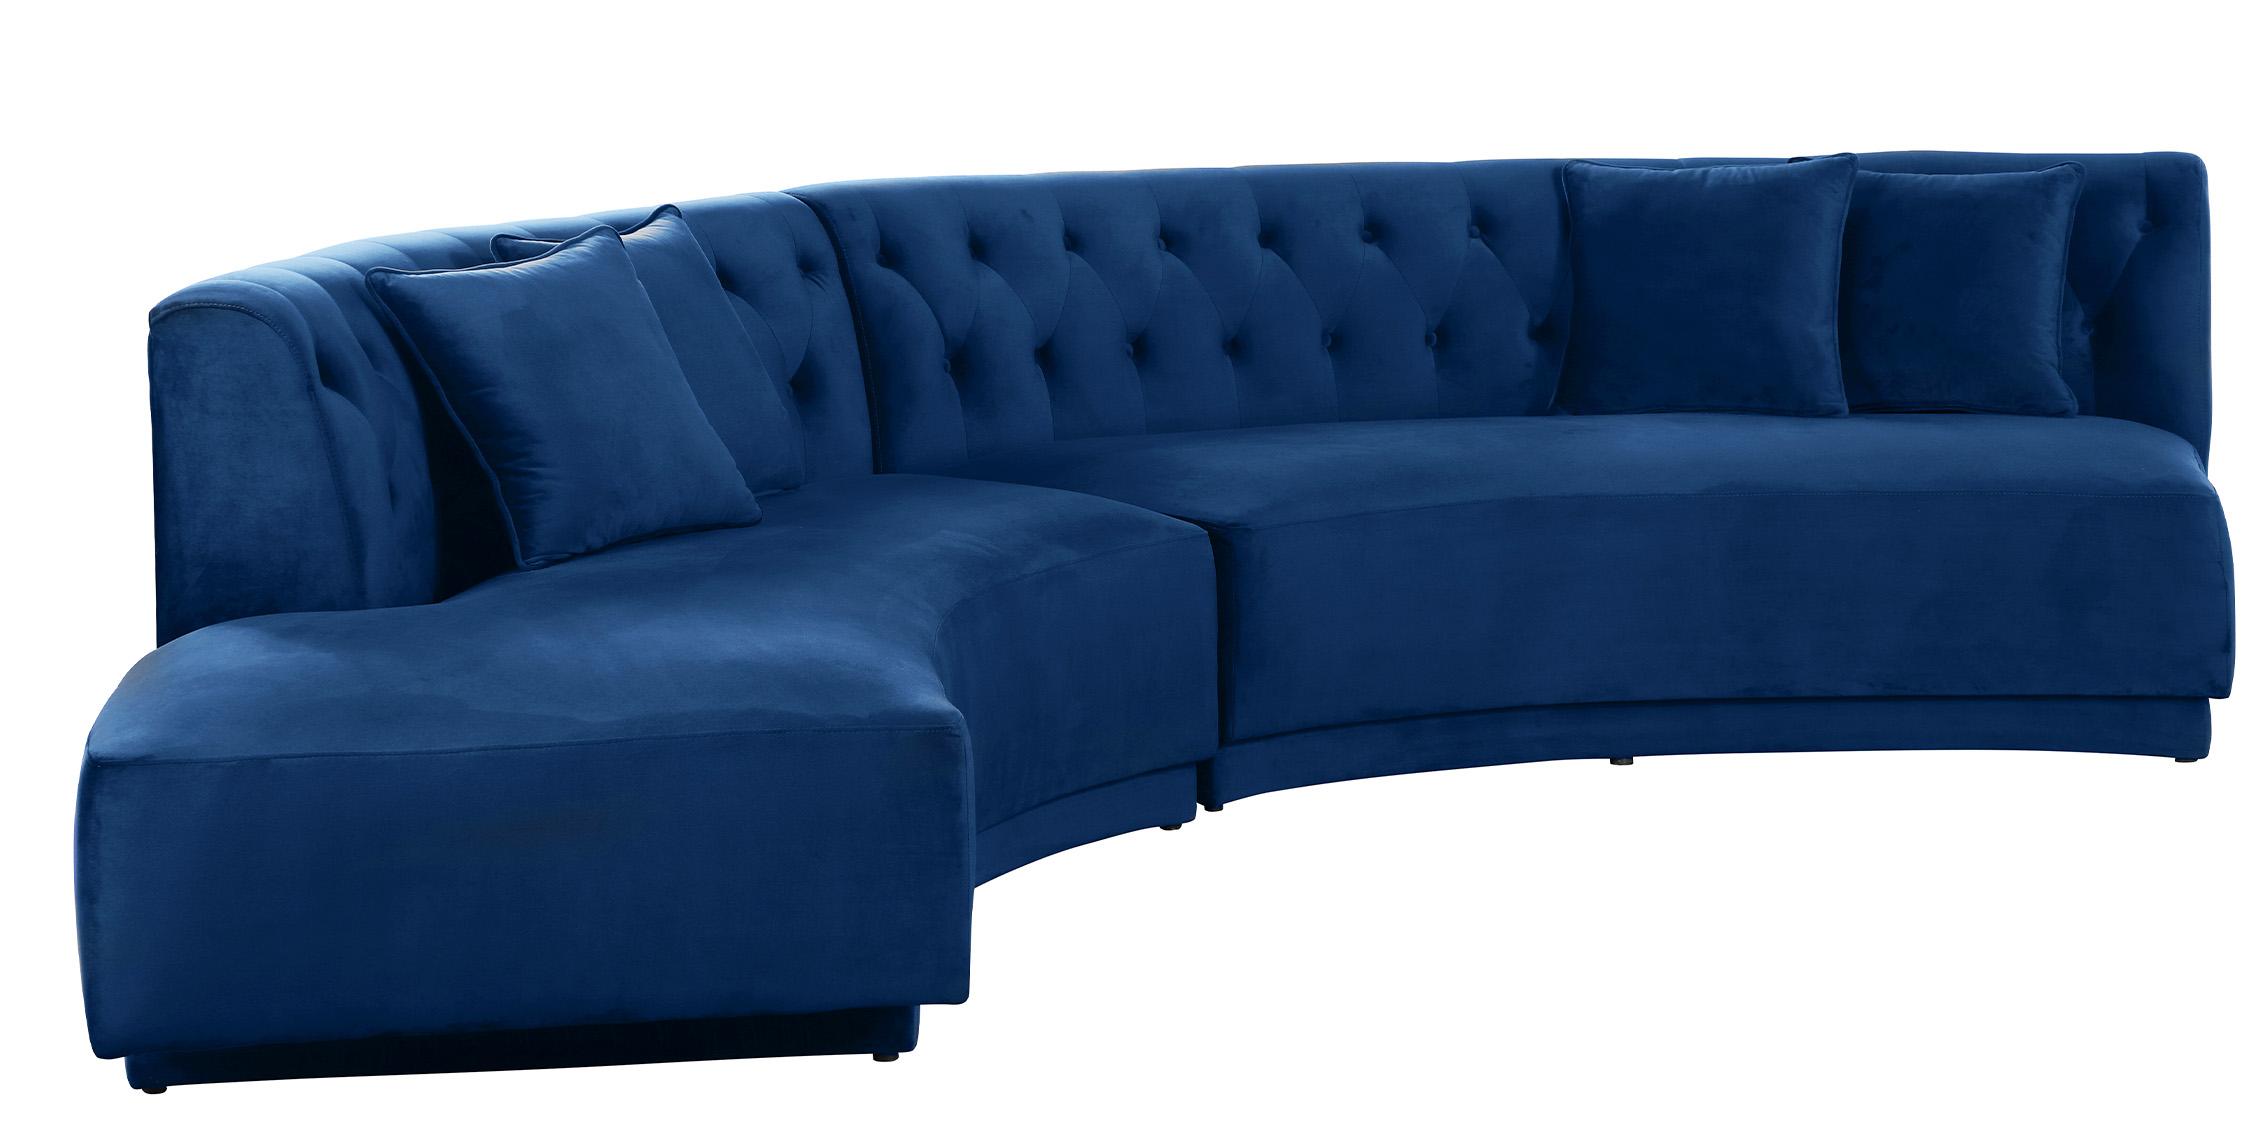 Contemporary, Modern Sectional Sofa KENZI 641Navy 641Navy-Sectional in Blue Velvet